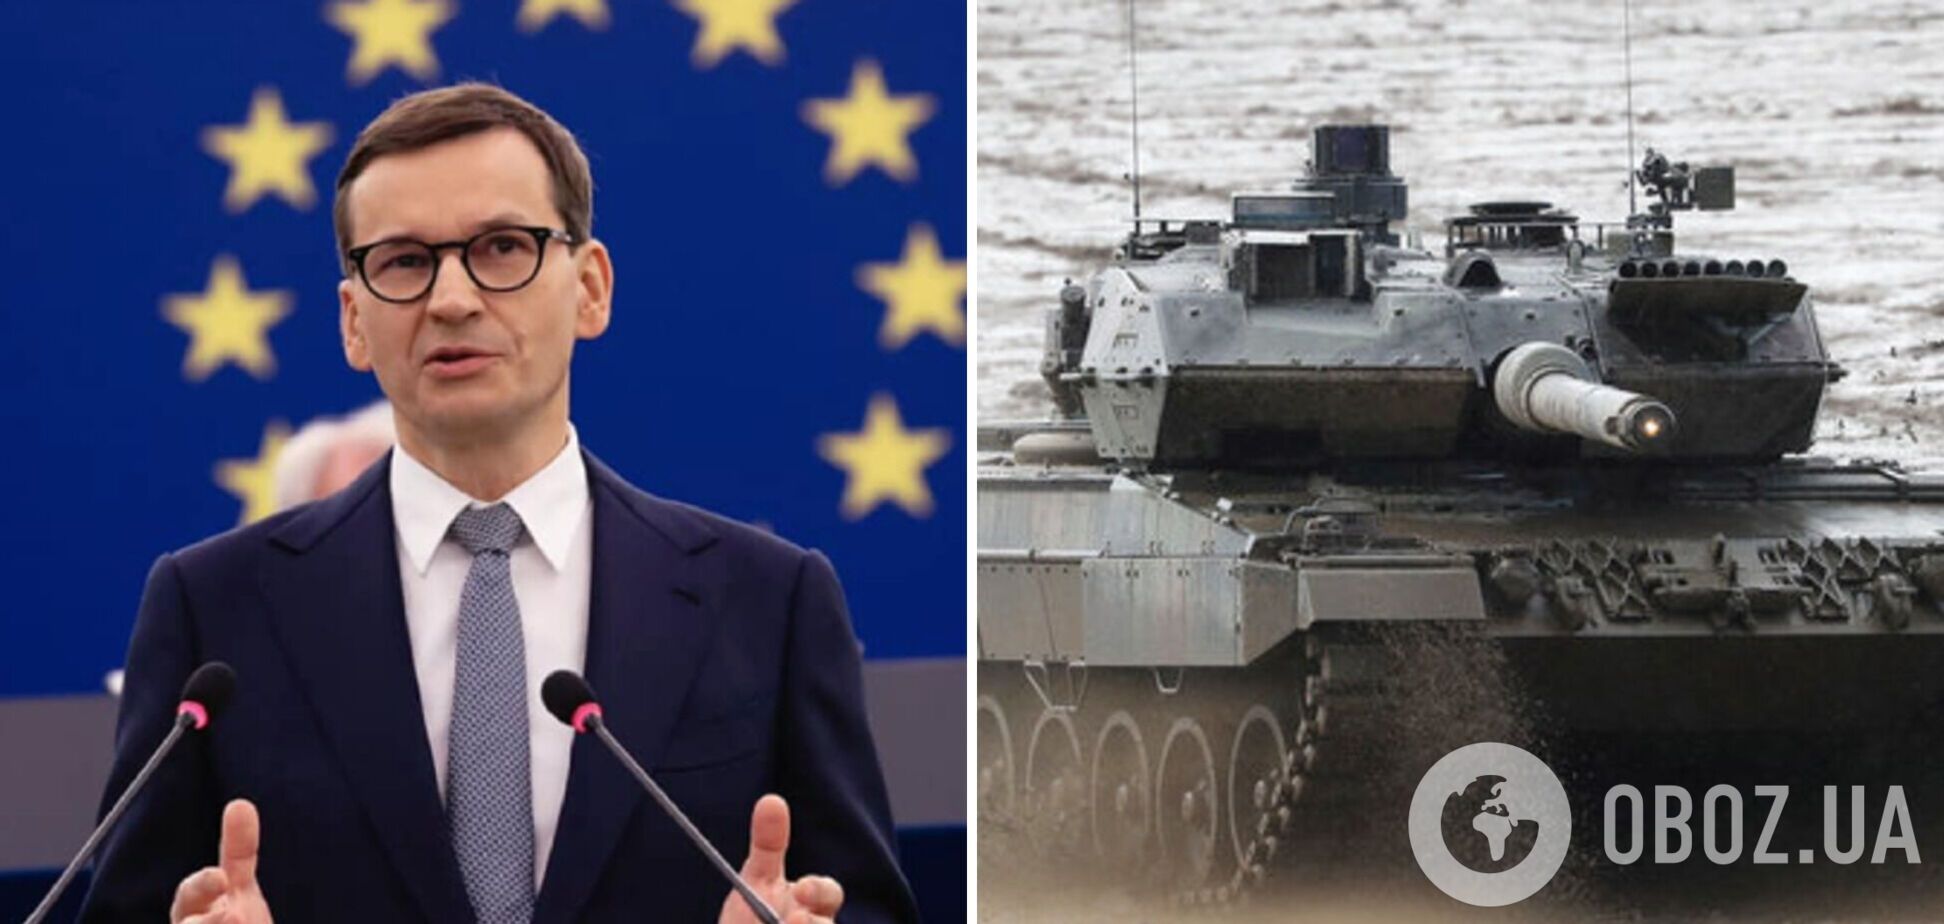 Навіть якщо Німеччина не дасть дозвіл: у Польщі розкрили механізм, за яким планують передати танки Україні